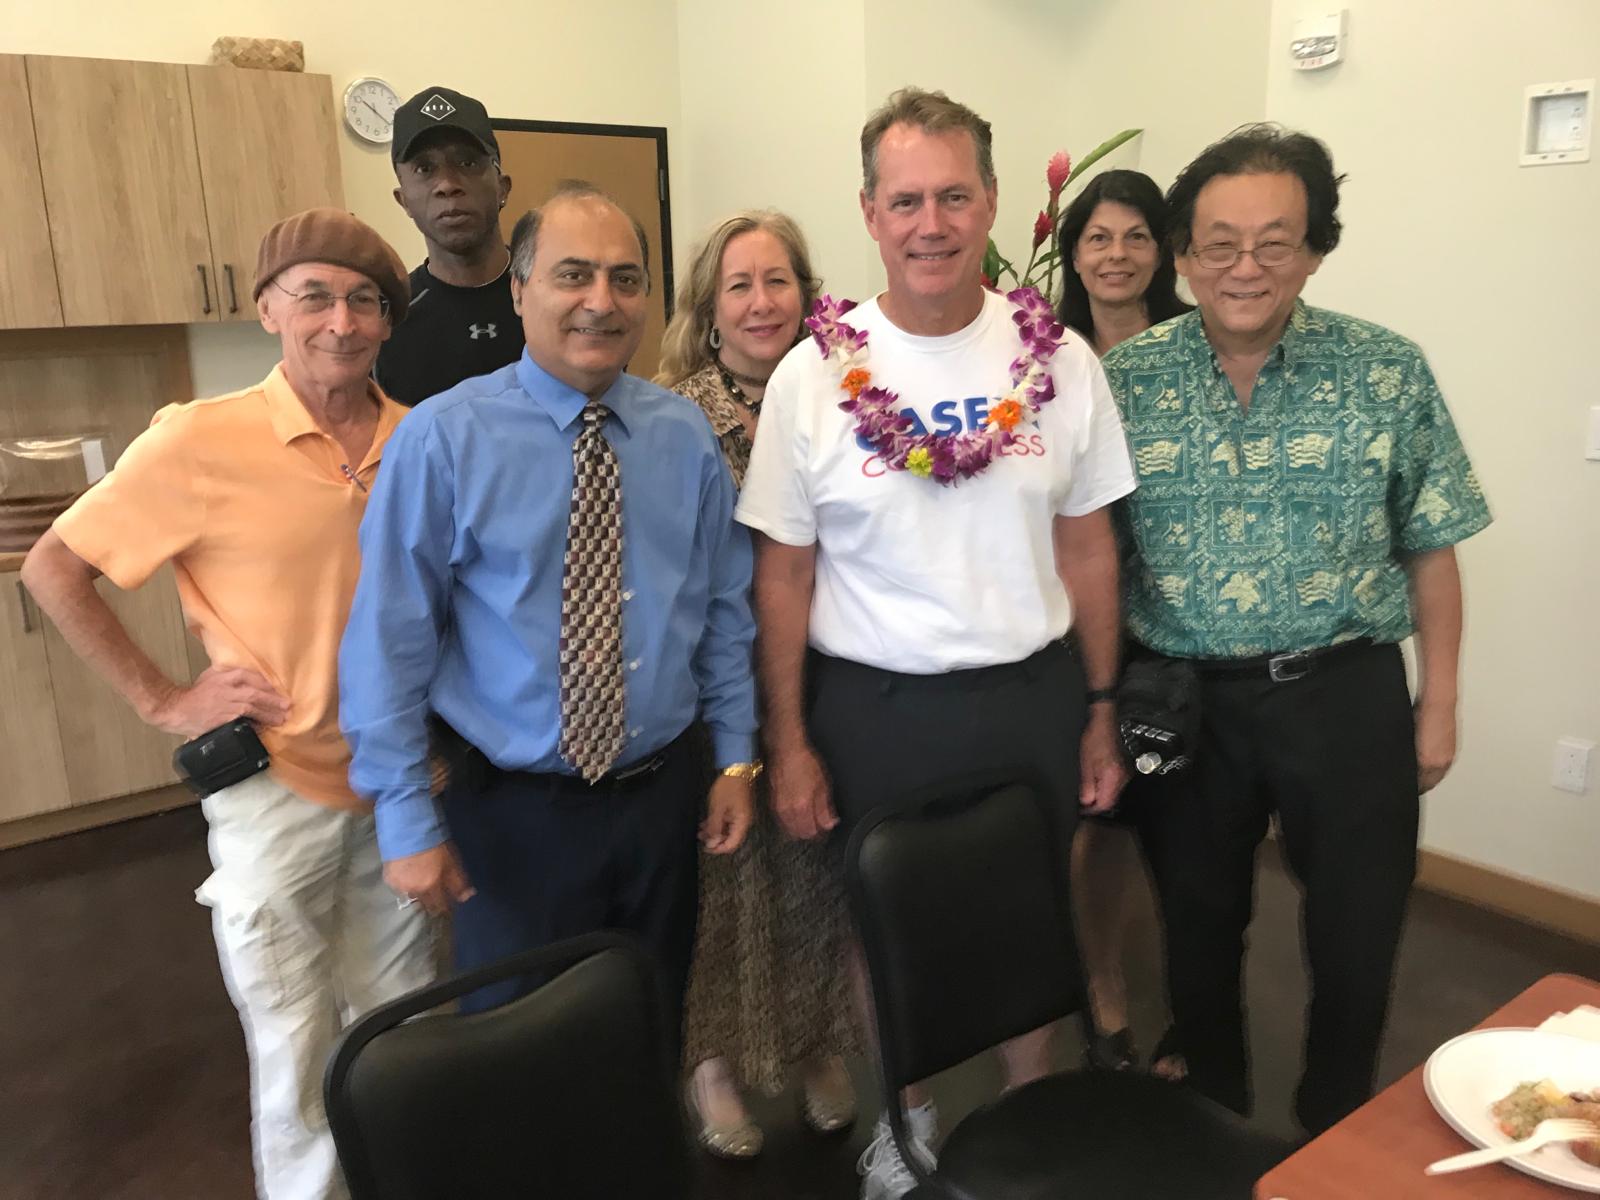 GIIP members met with Hon. U. S. Congressman,ED Case in Honolulu.